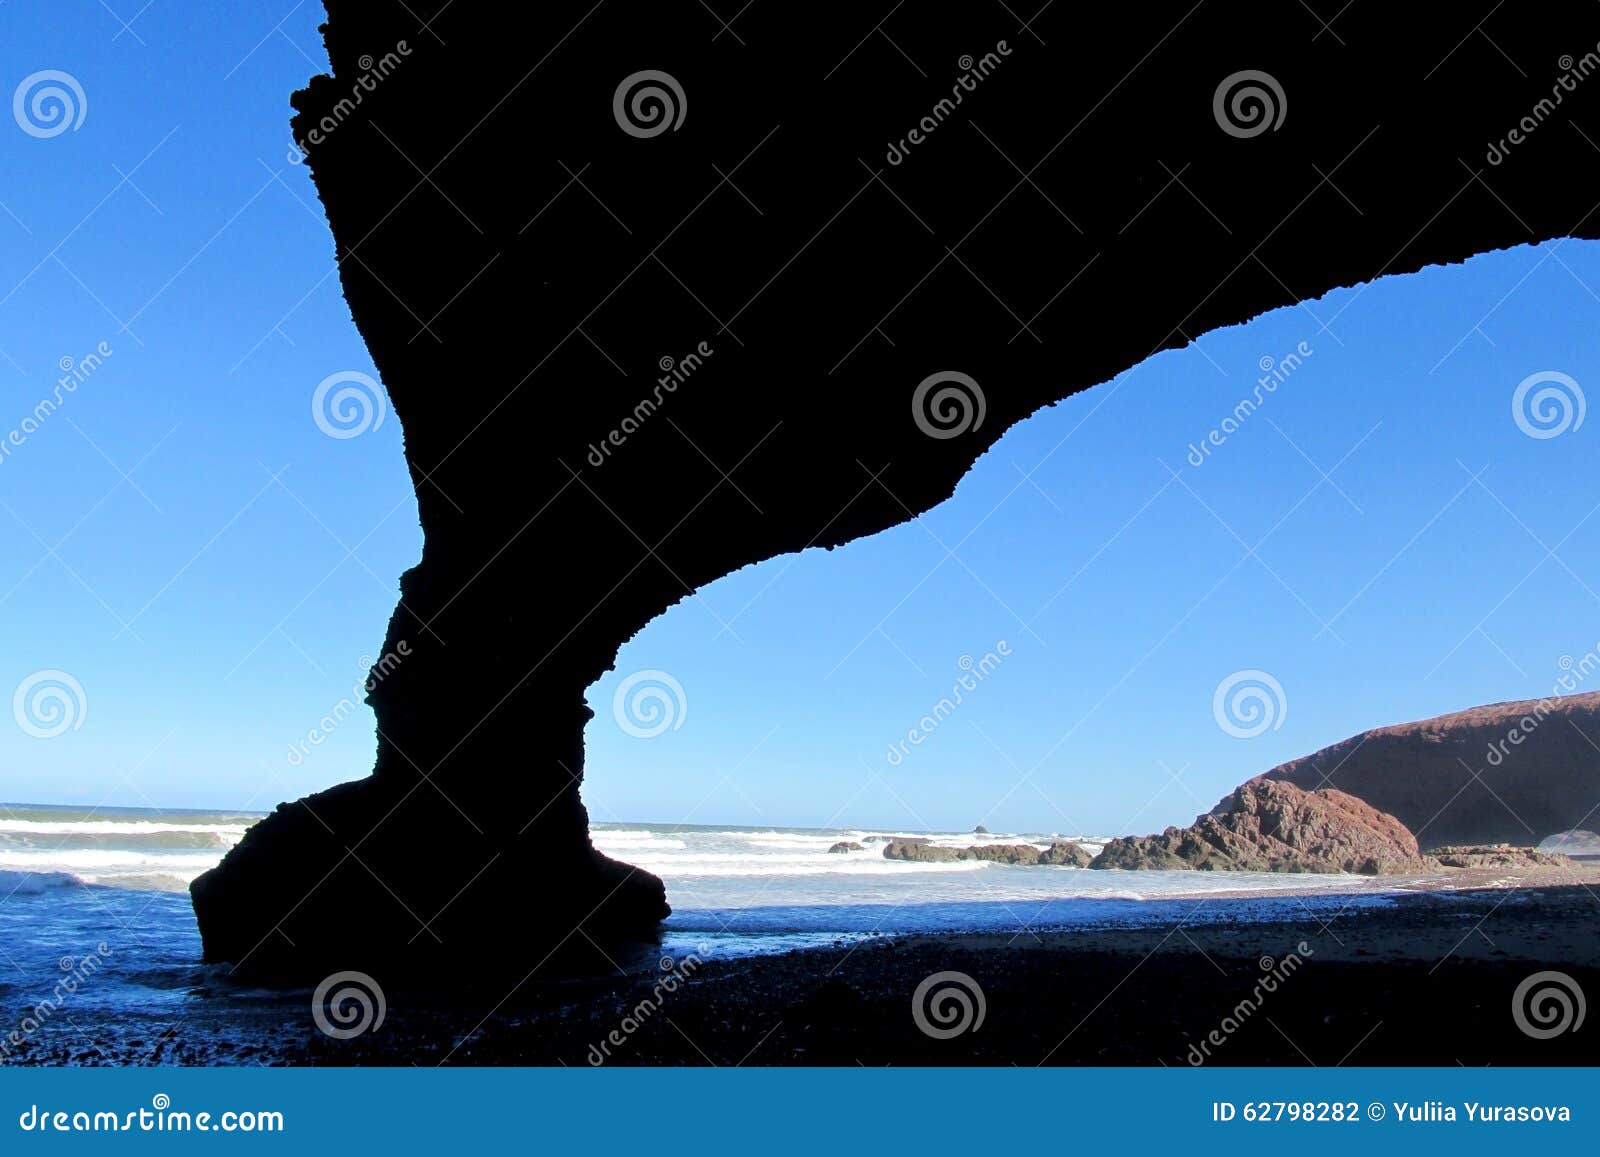 ocean beach stone arch silhouette